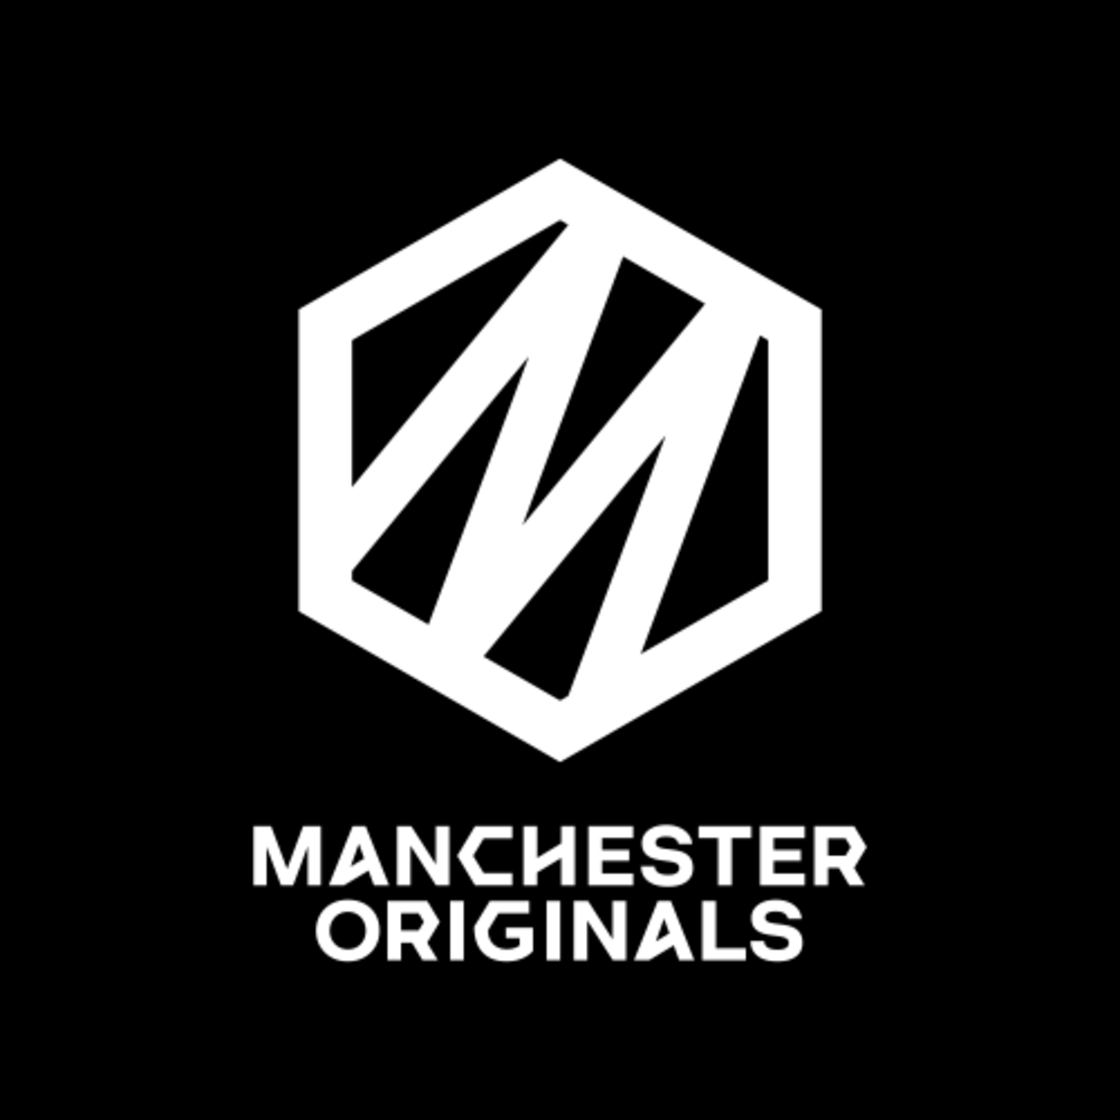 Manchester Originals team logo